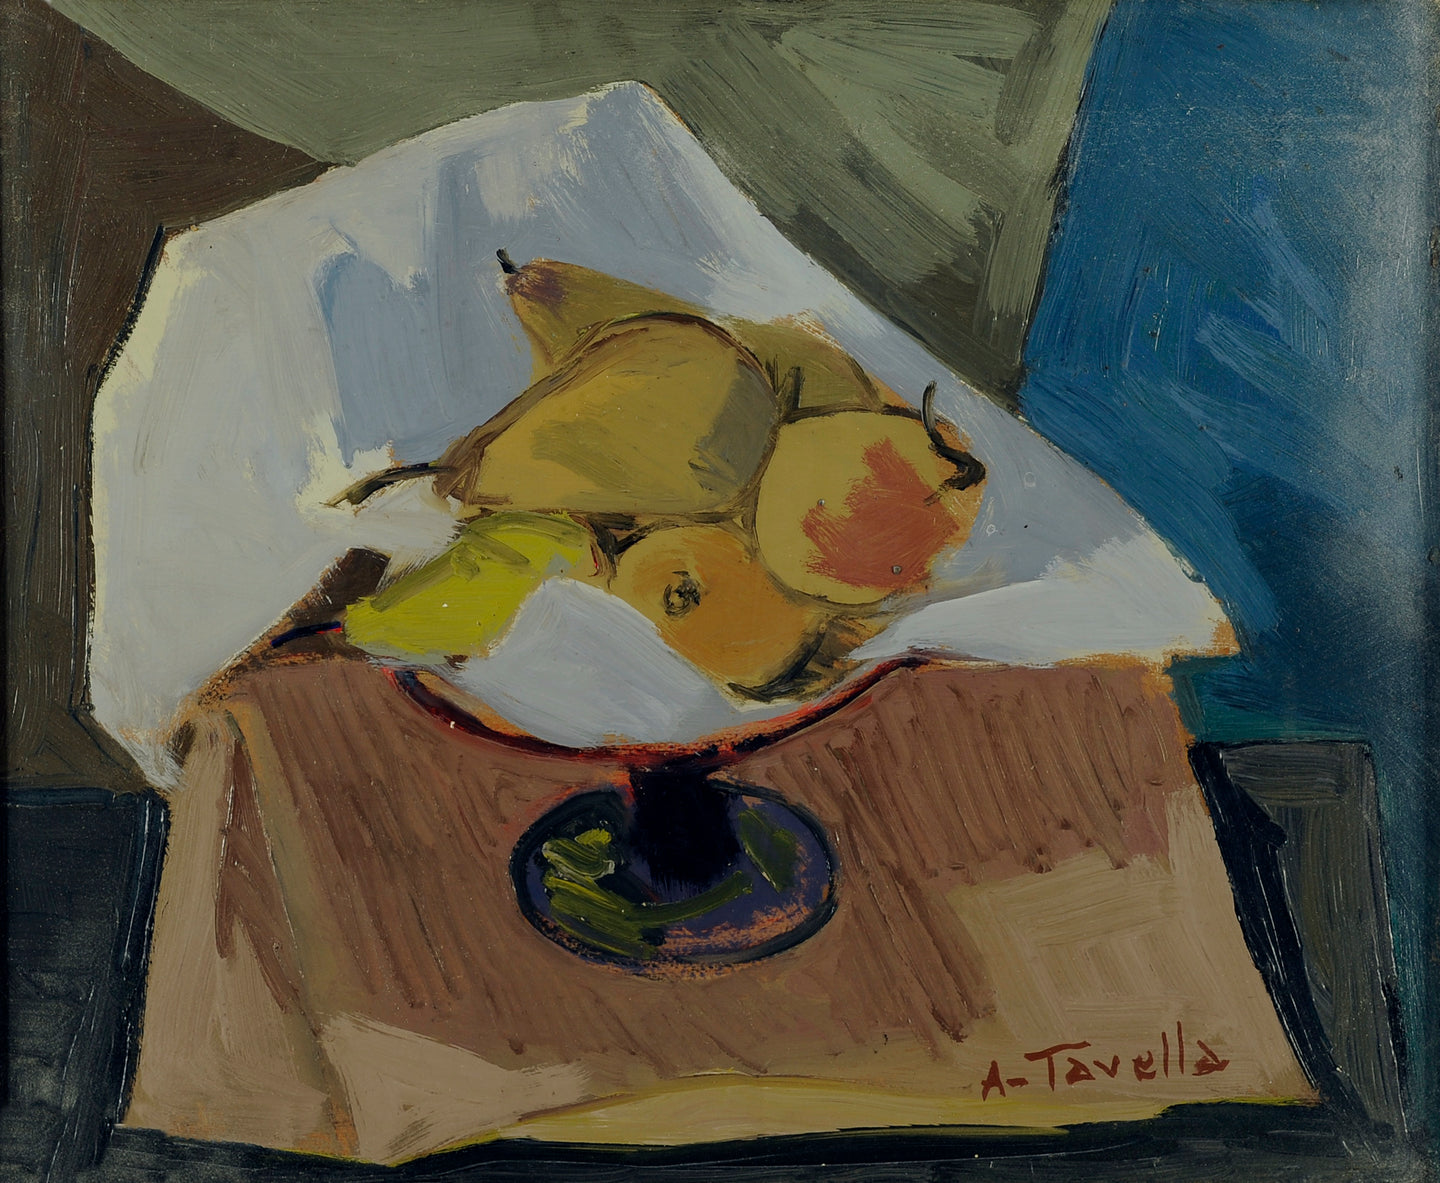 Aldo Tavella, Frutta, 1958